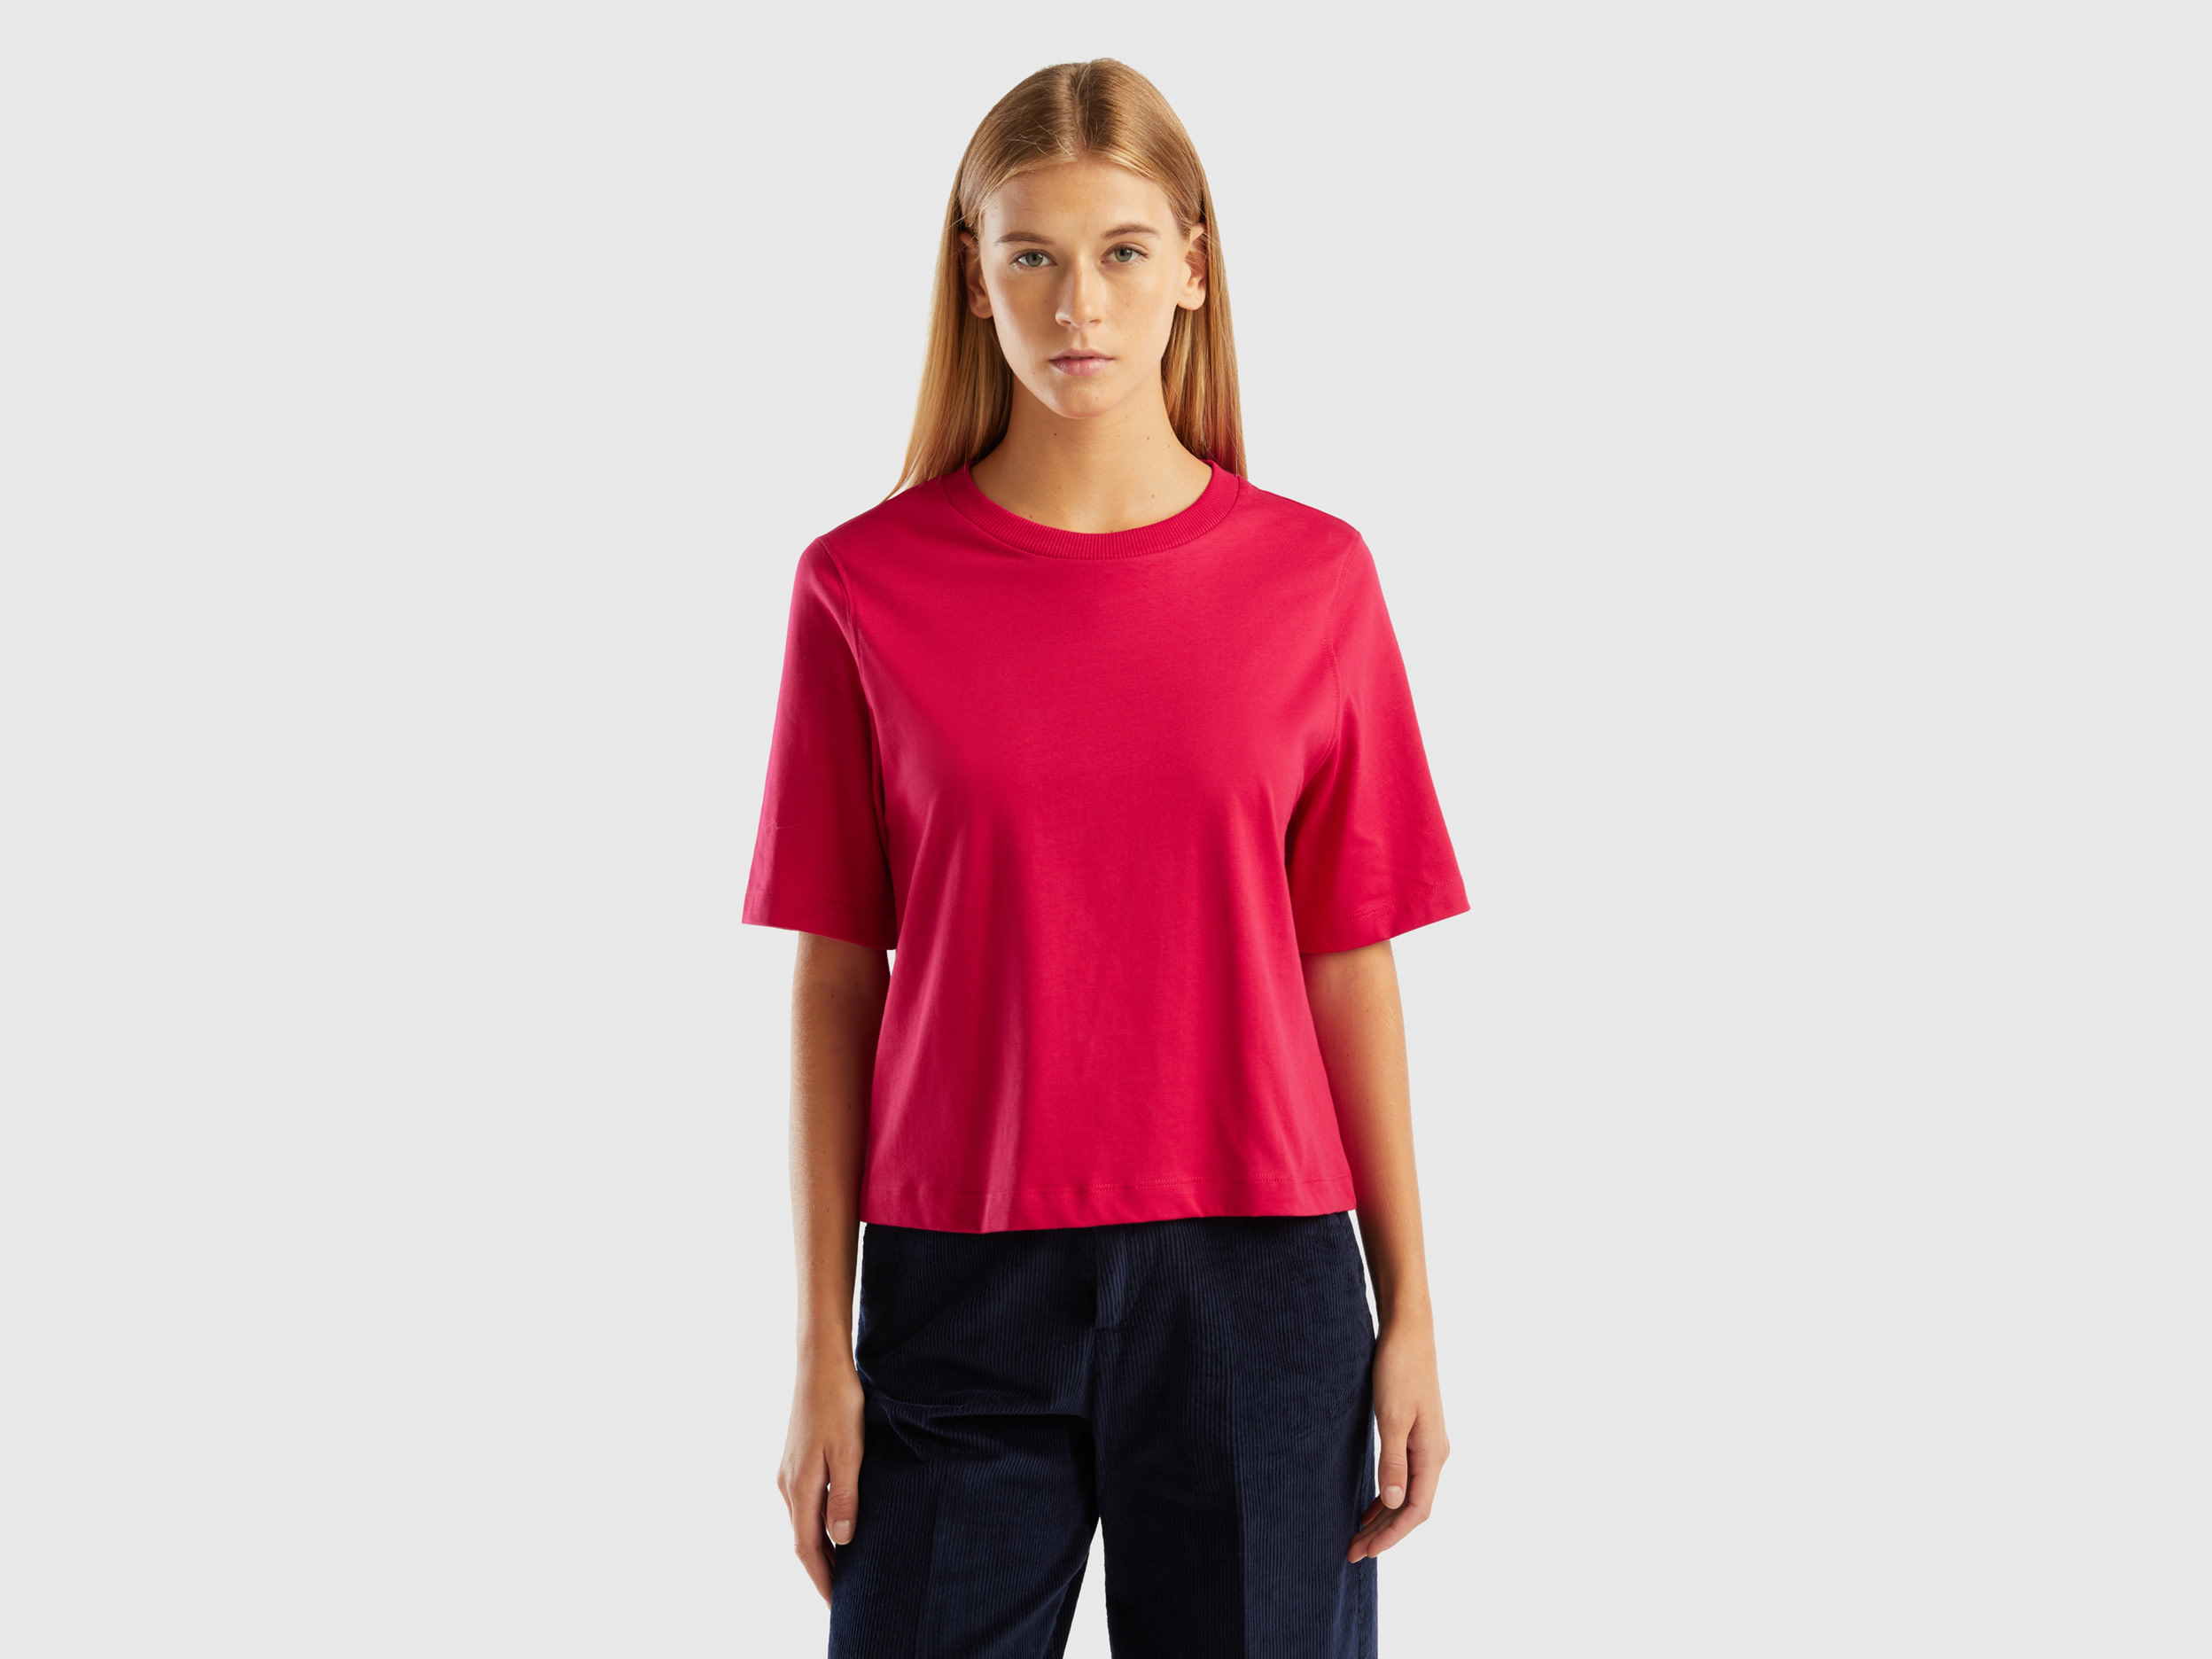 Benetton, 100% Cotton Boxy Fit T-shirt, size XXS, Cyclamen, Women